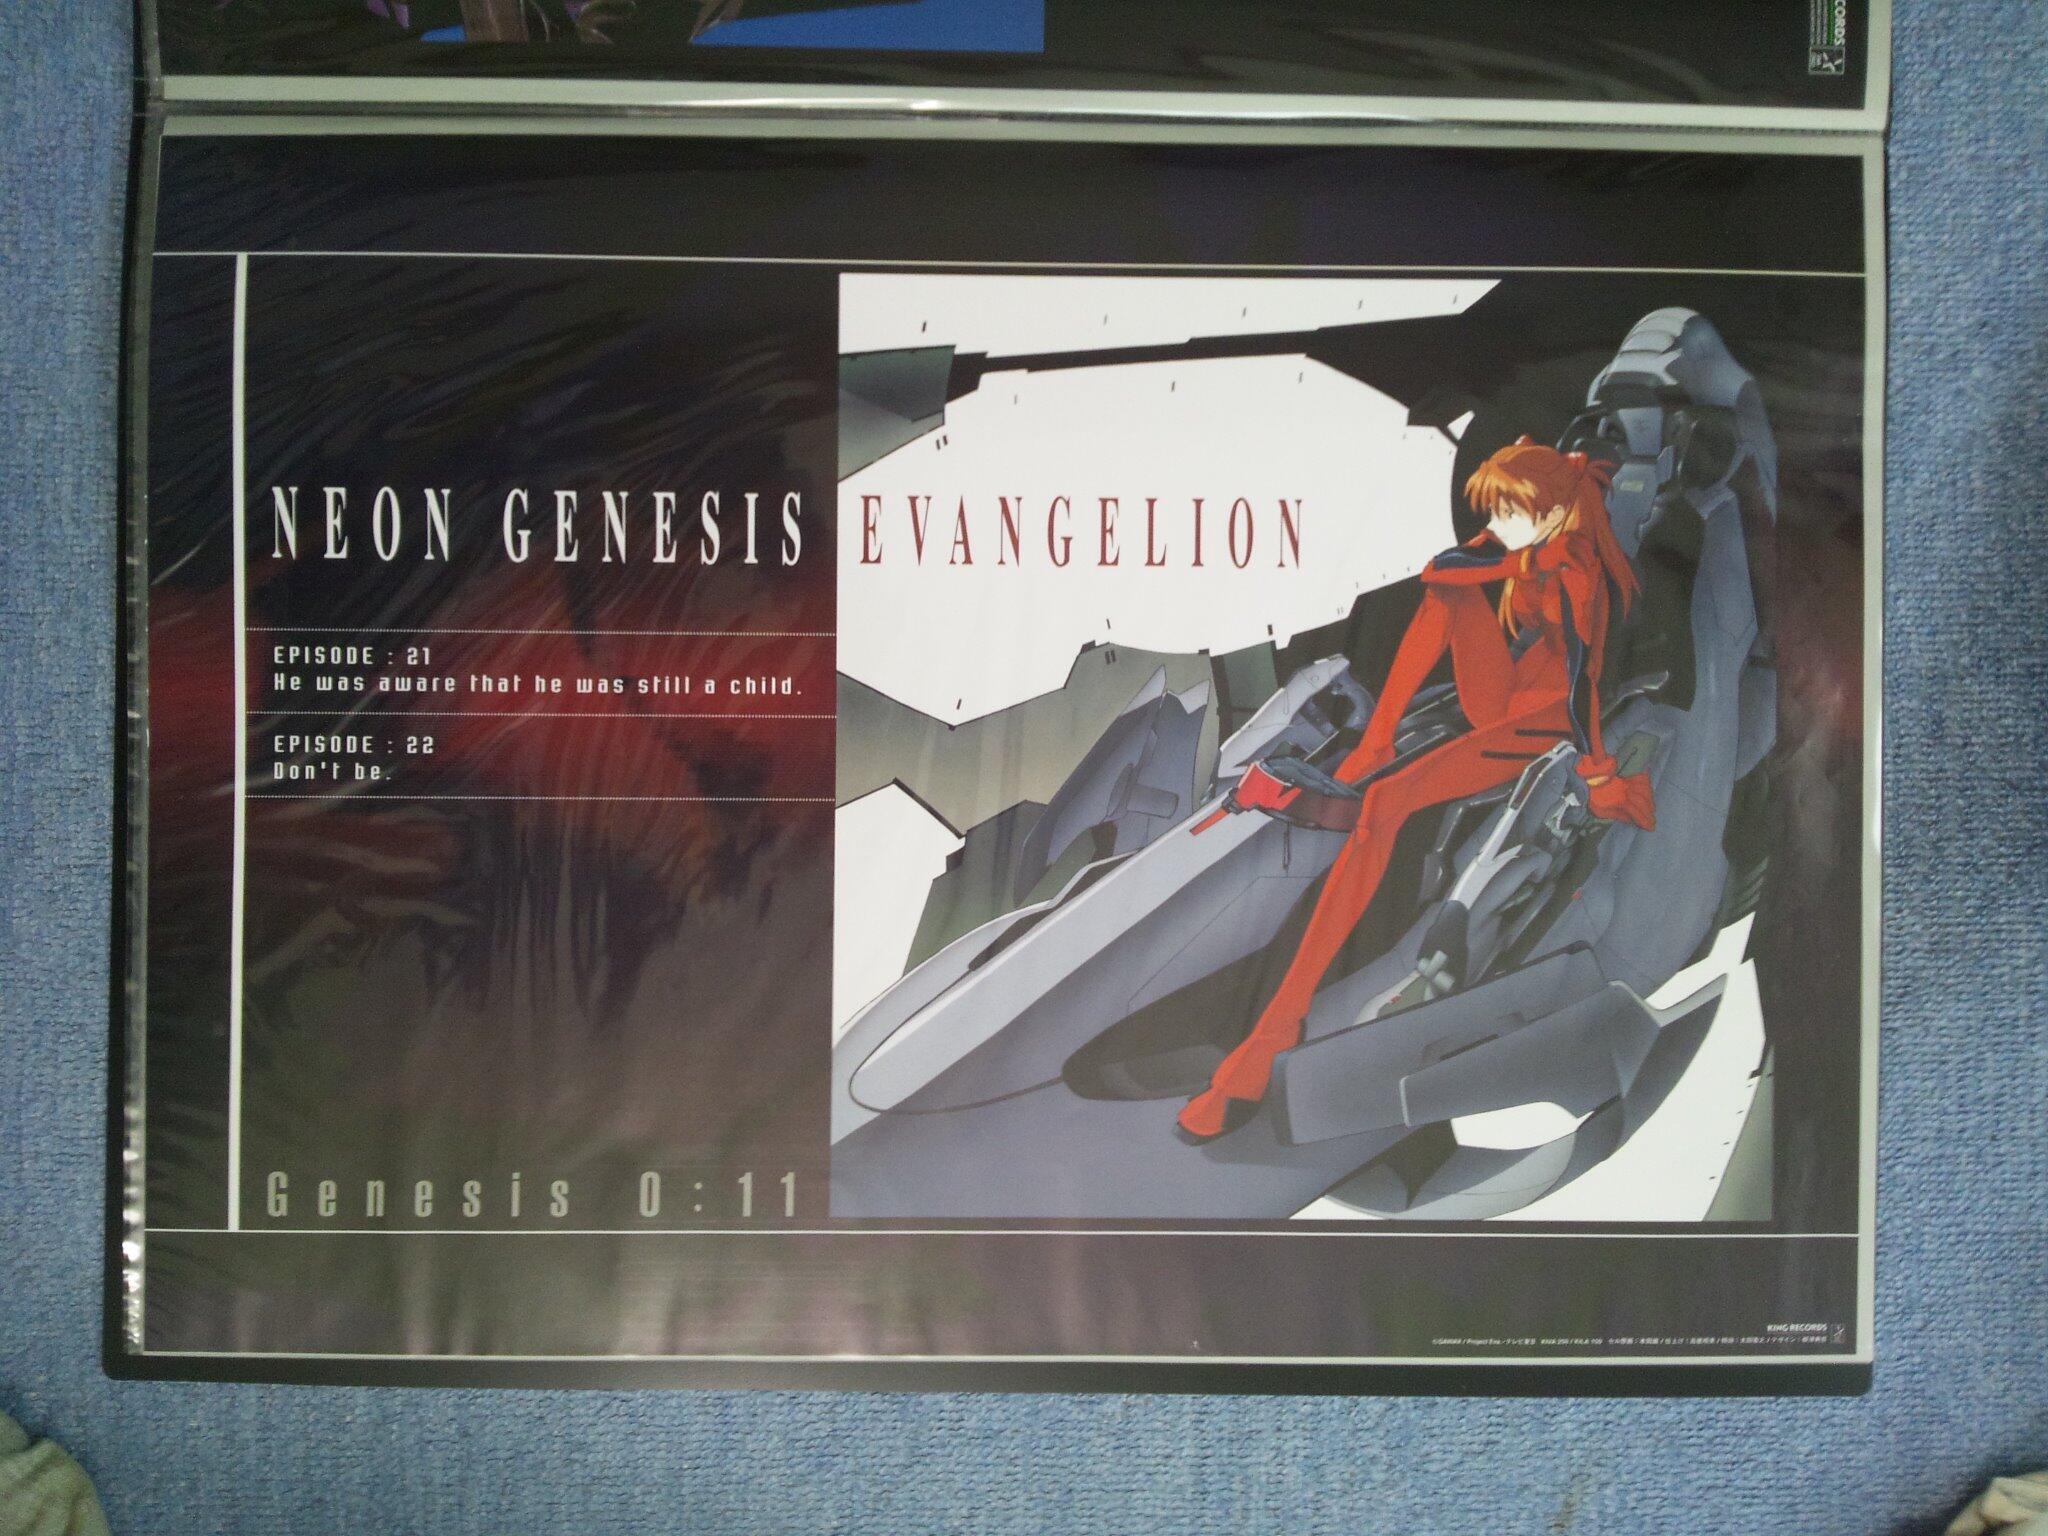 吉田正高 on Twitter: "『新世紀エヴァンゲリオン』VHS／LD版「Genesis0:11」のポスター♪ http://t.co